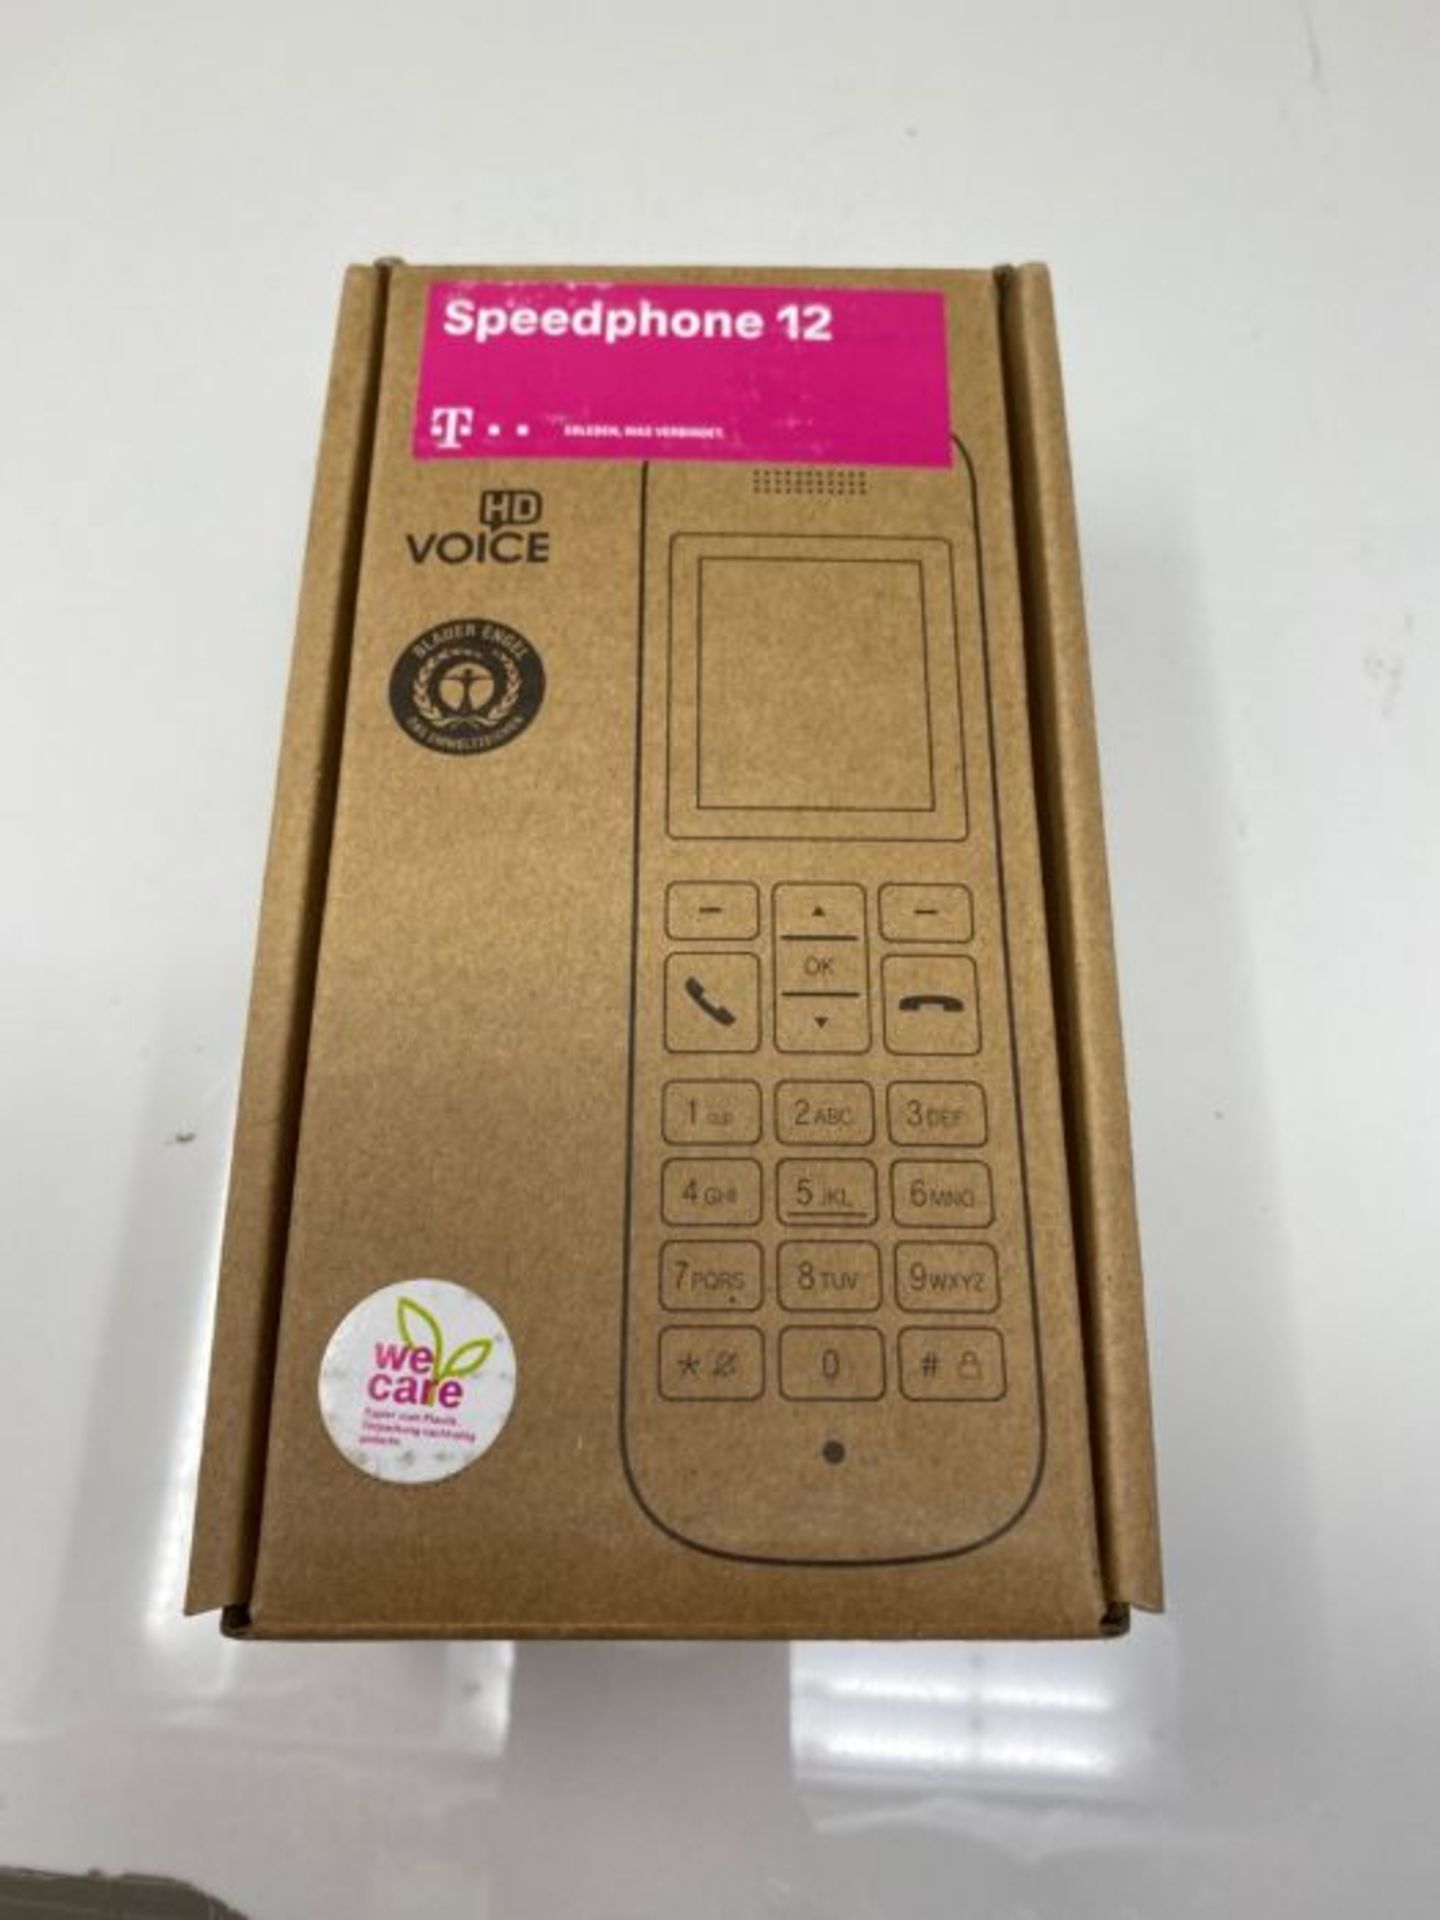 Telekom Speedphone 12 IP phone White Wireless handset TFT - Telekom Speedphone 12, Whi - Image 2 of 3